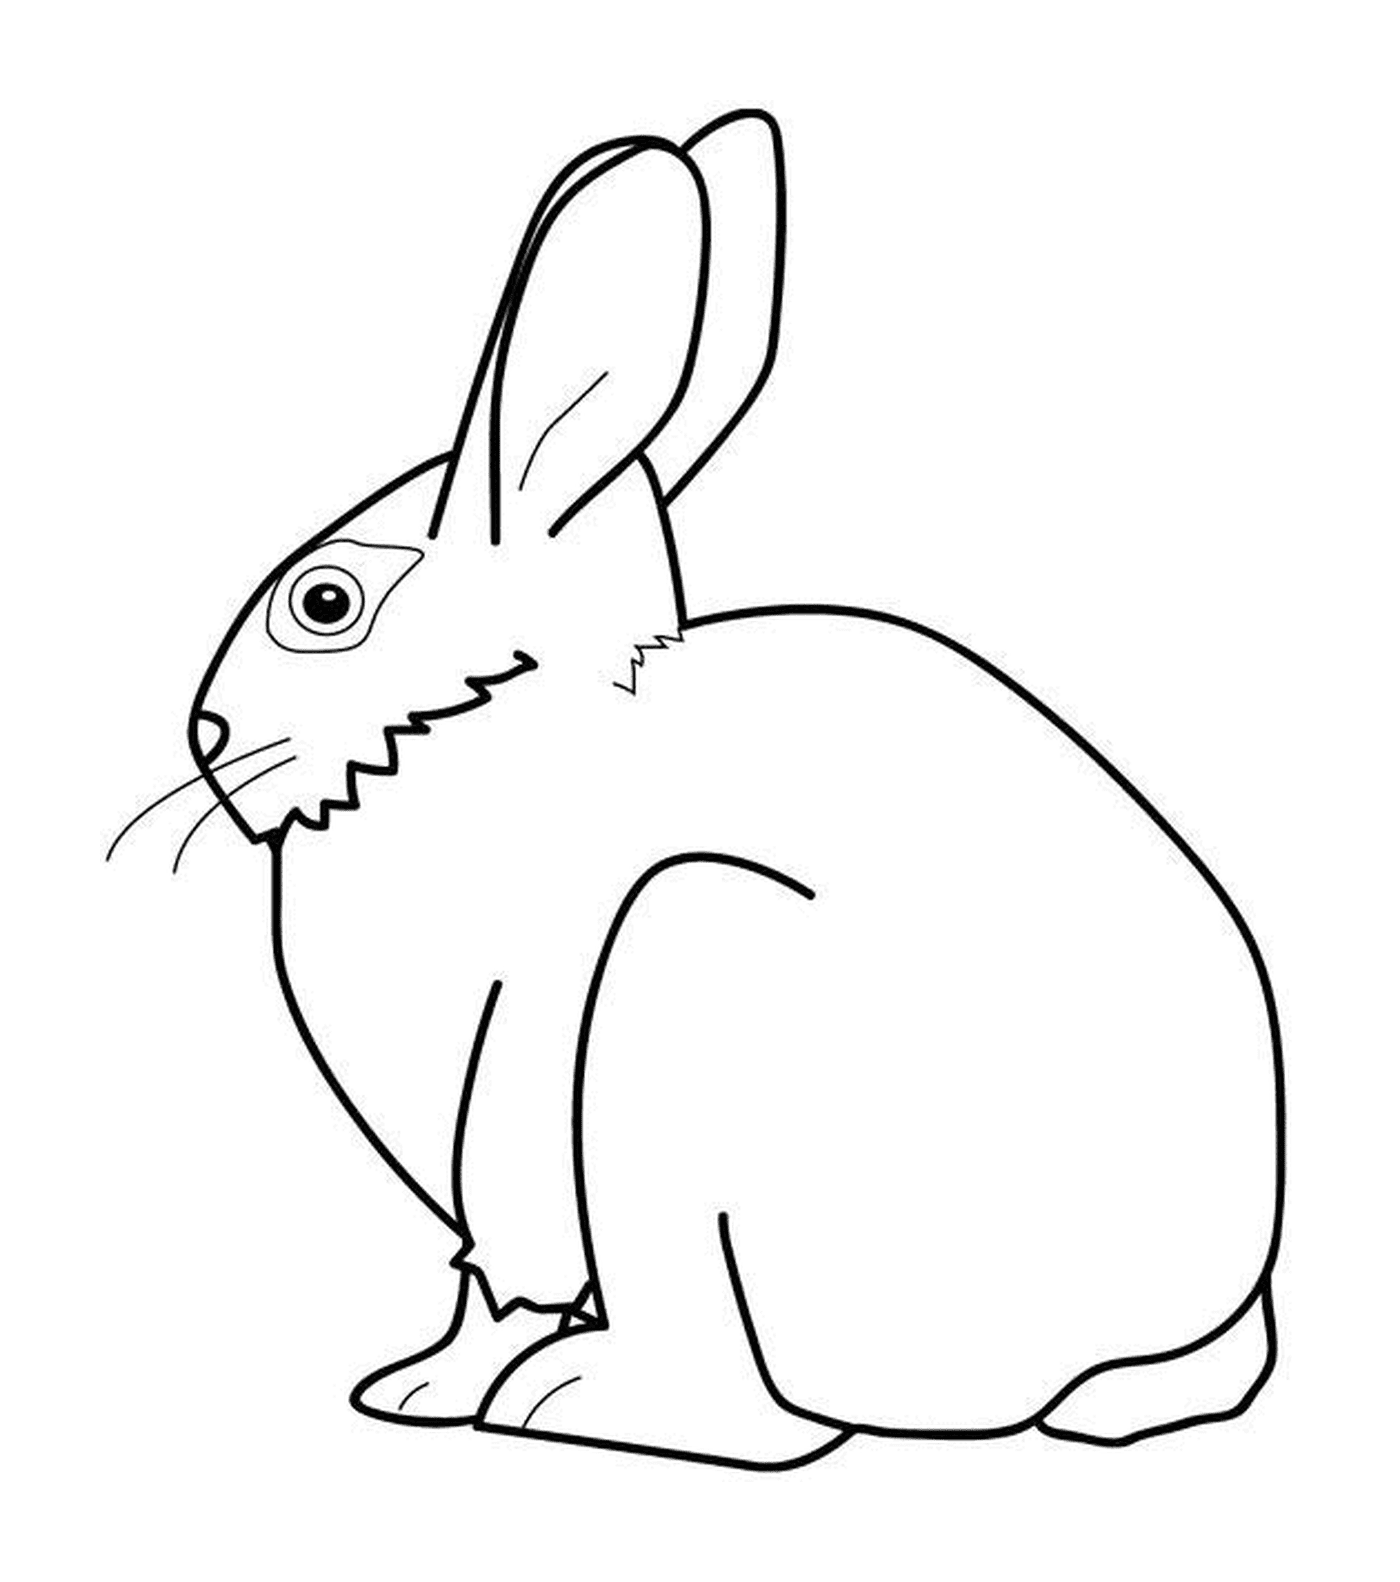  Conejo visto desde atrás 